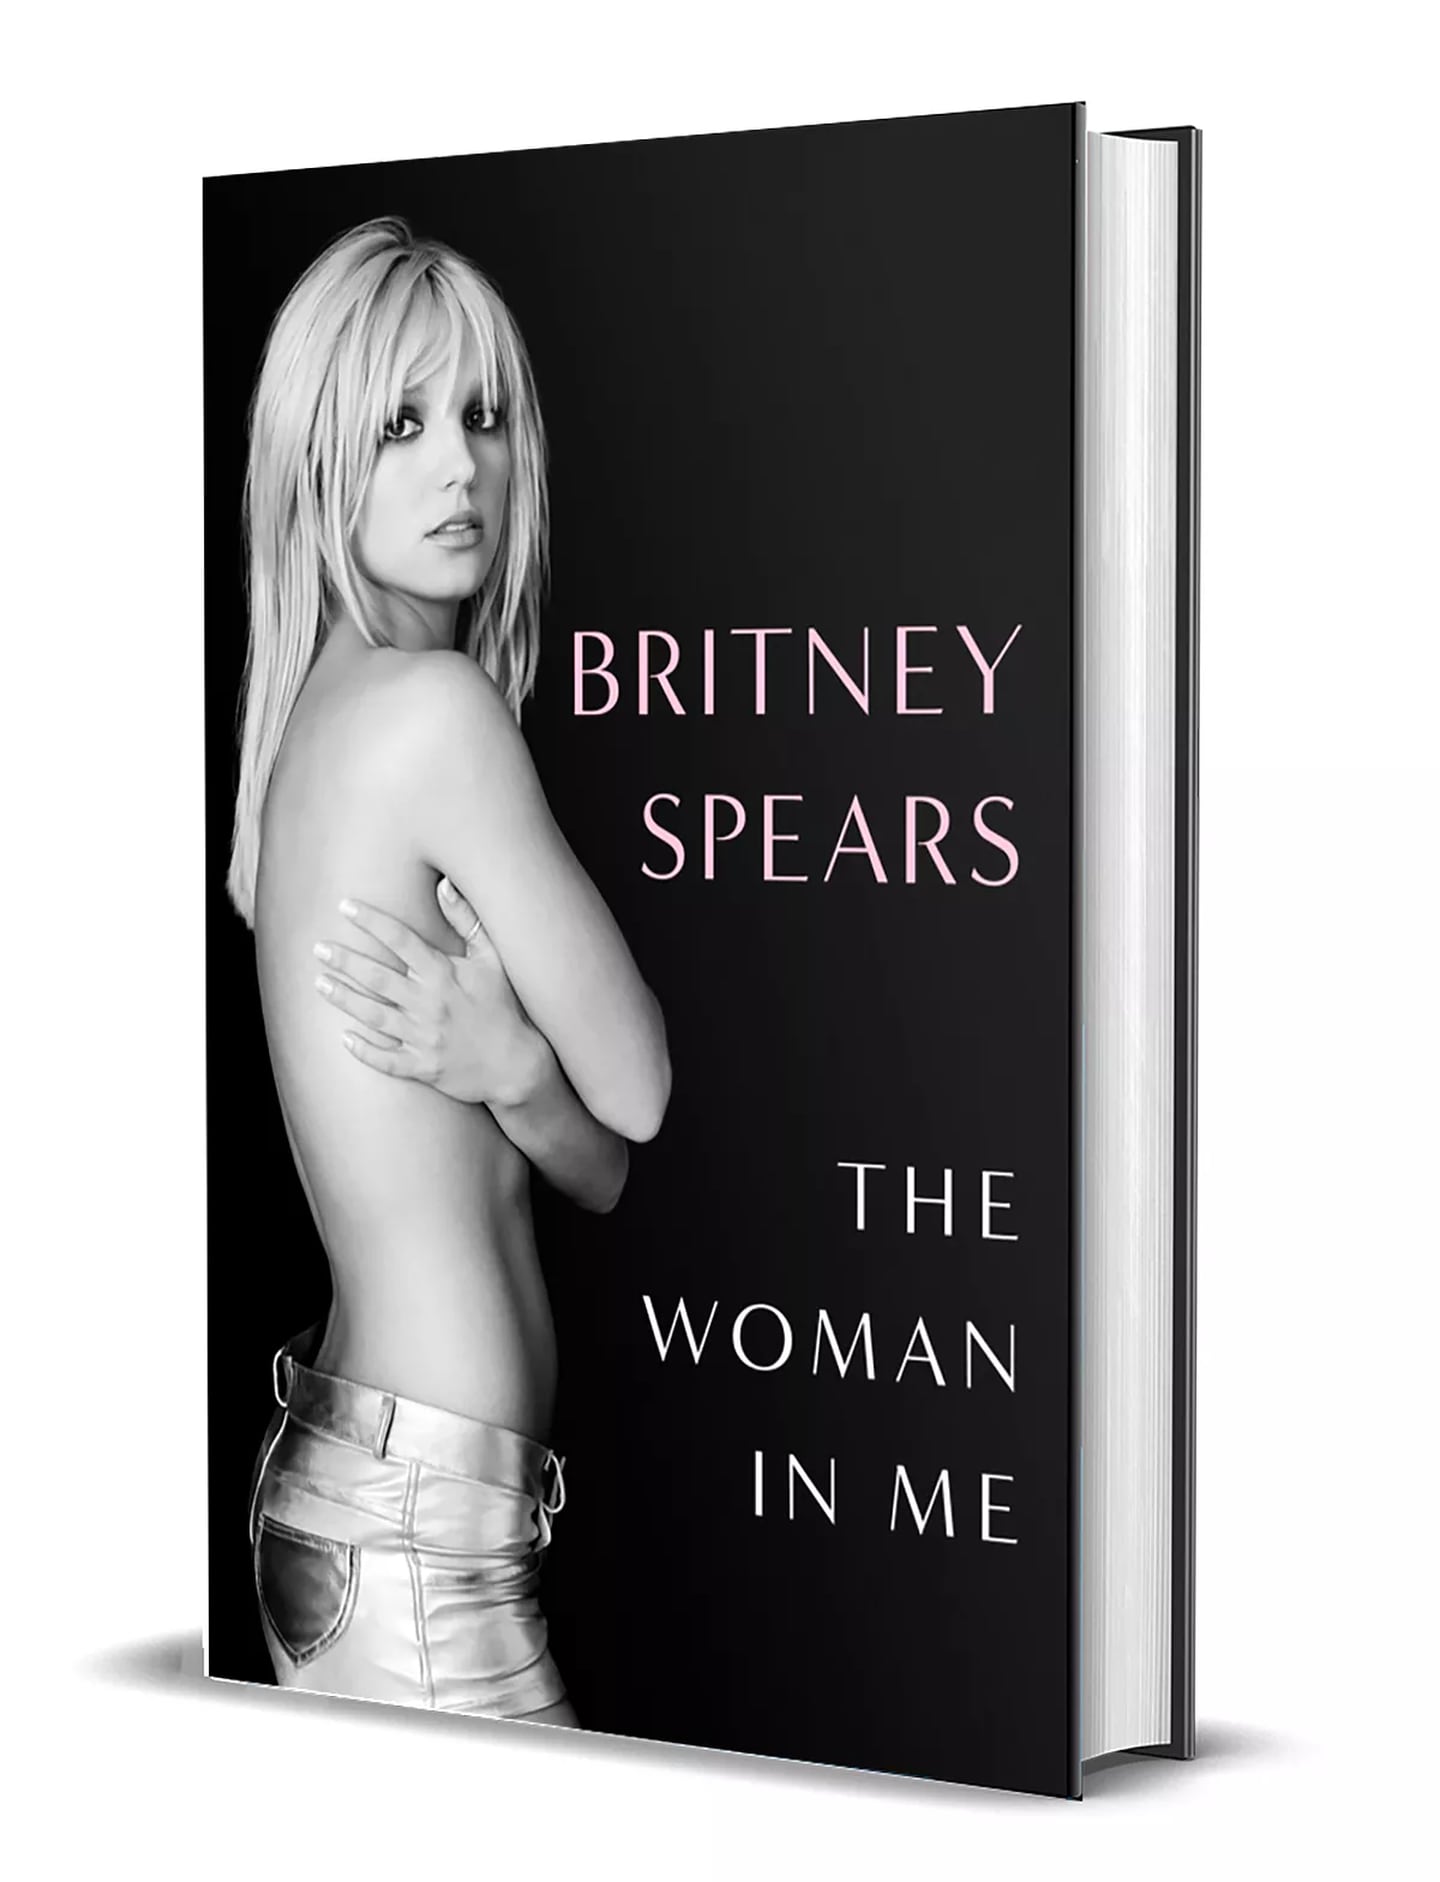 Nuevo libro de memorias de Britney Spears